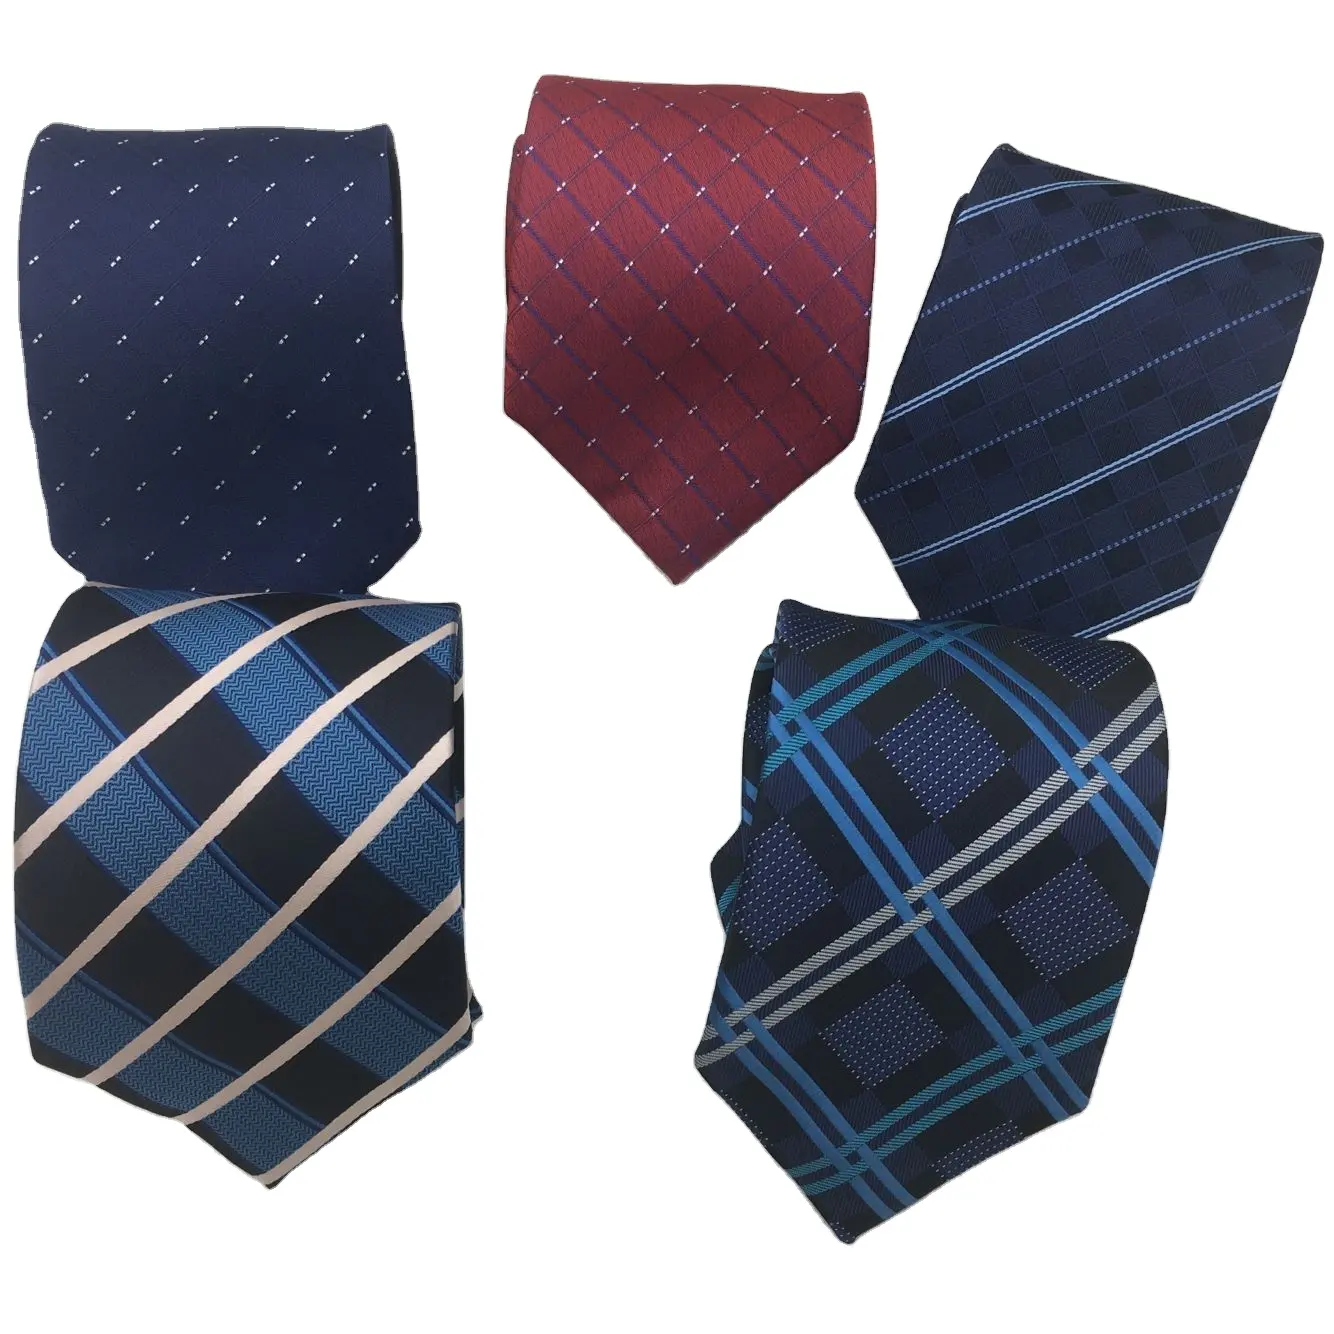 8cm Jacquard Men's Classic Tie Bule Red Jacquard Check Design Cravata Ties Men Bridegroom Business Necktie Accessories Tie